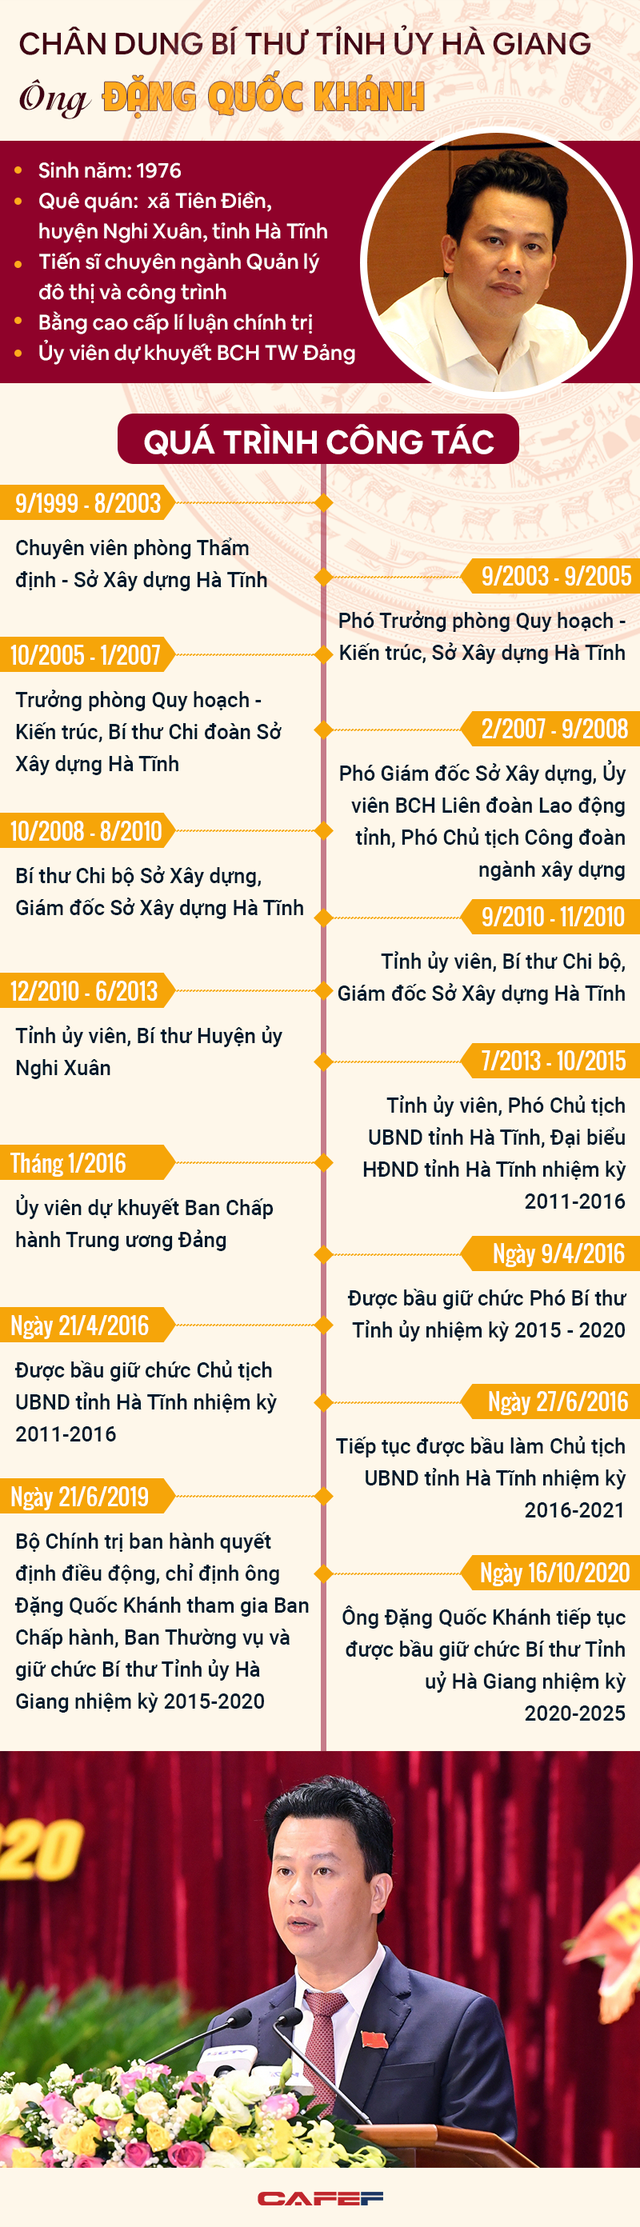 [Infographic]: Chân dung Bí thư Tỉnh ủy Hà Giang Đặng Quốc Khánh - Ảnh 1.